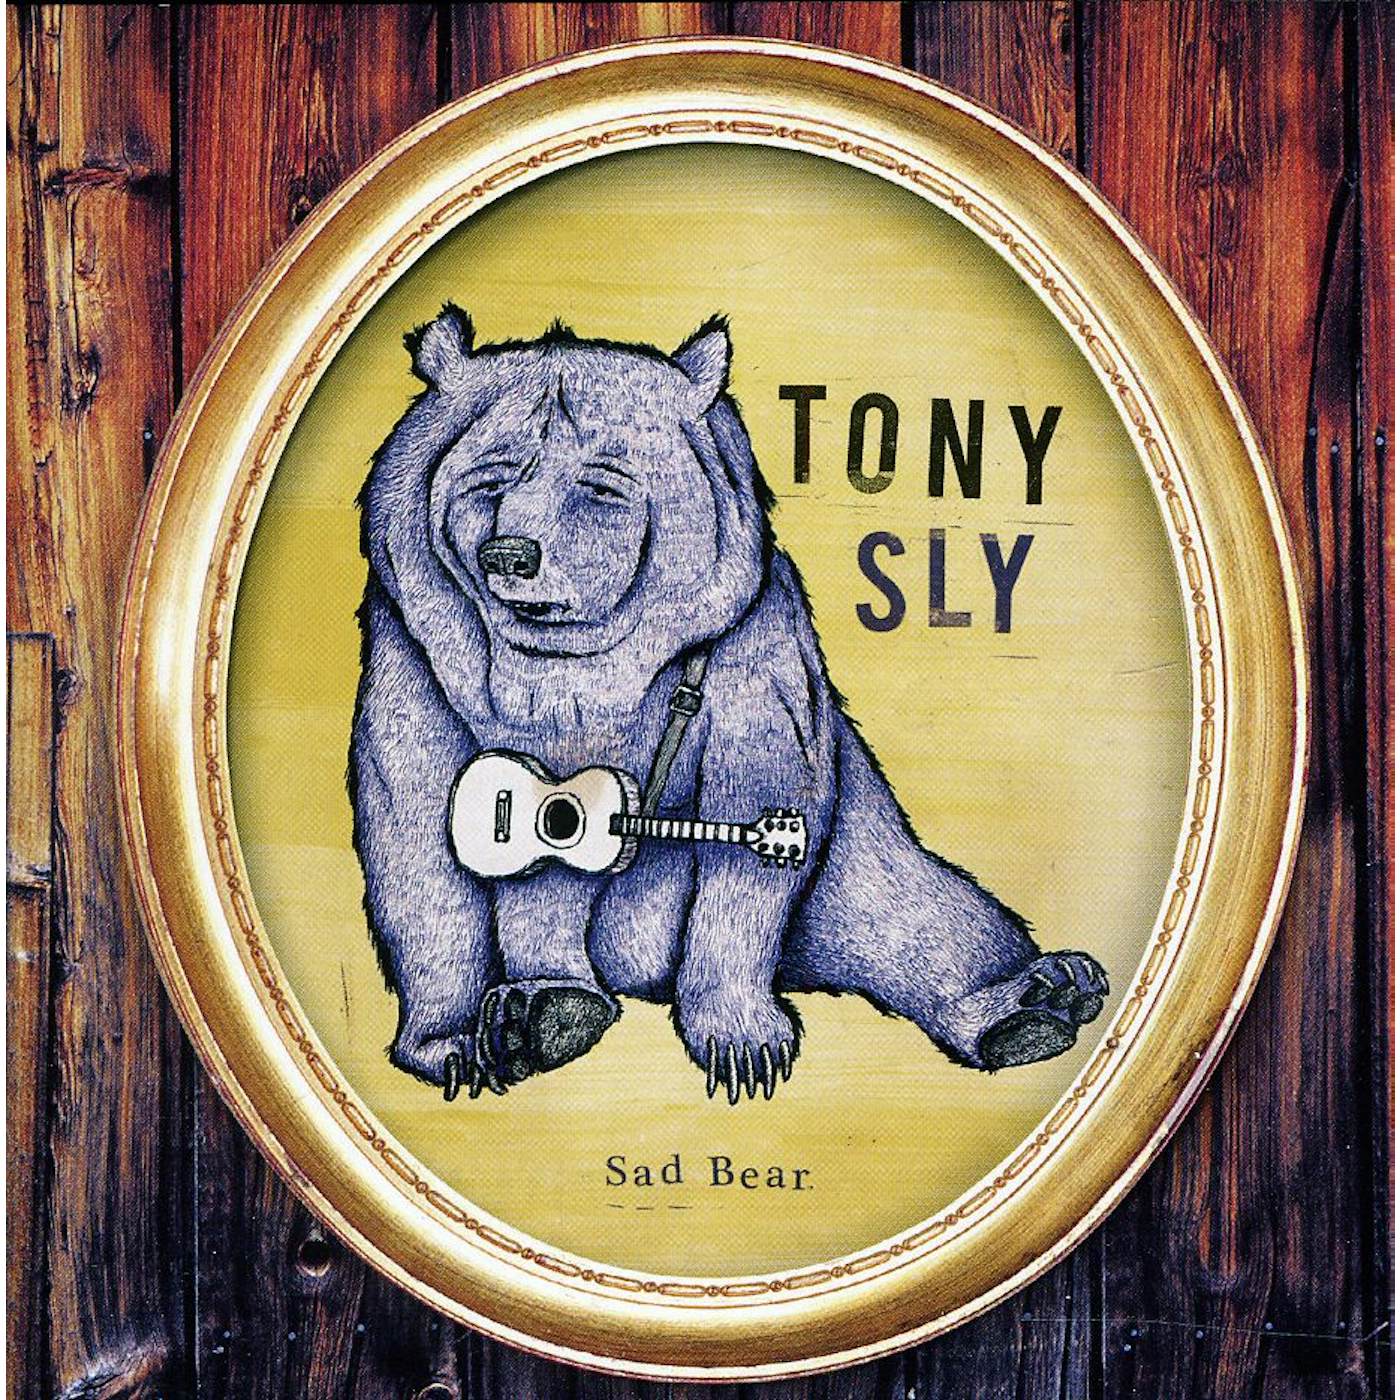 Tony Sly SAD BEAR CD